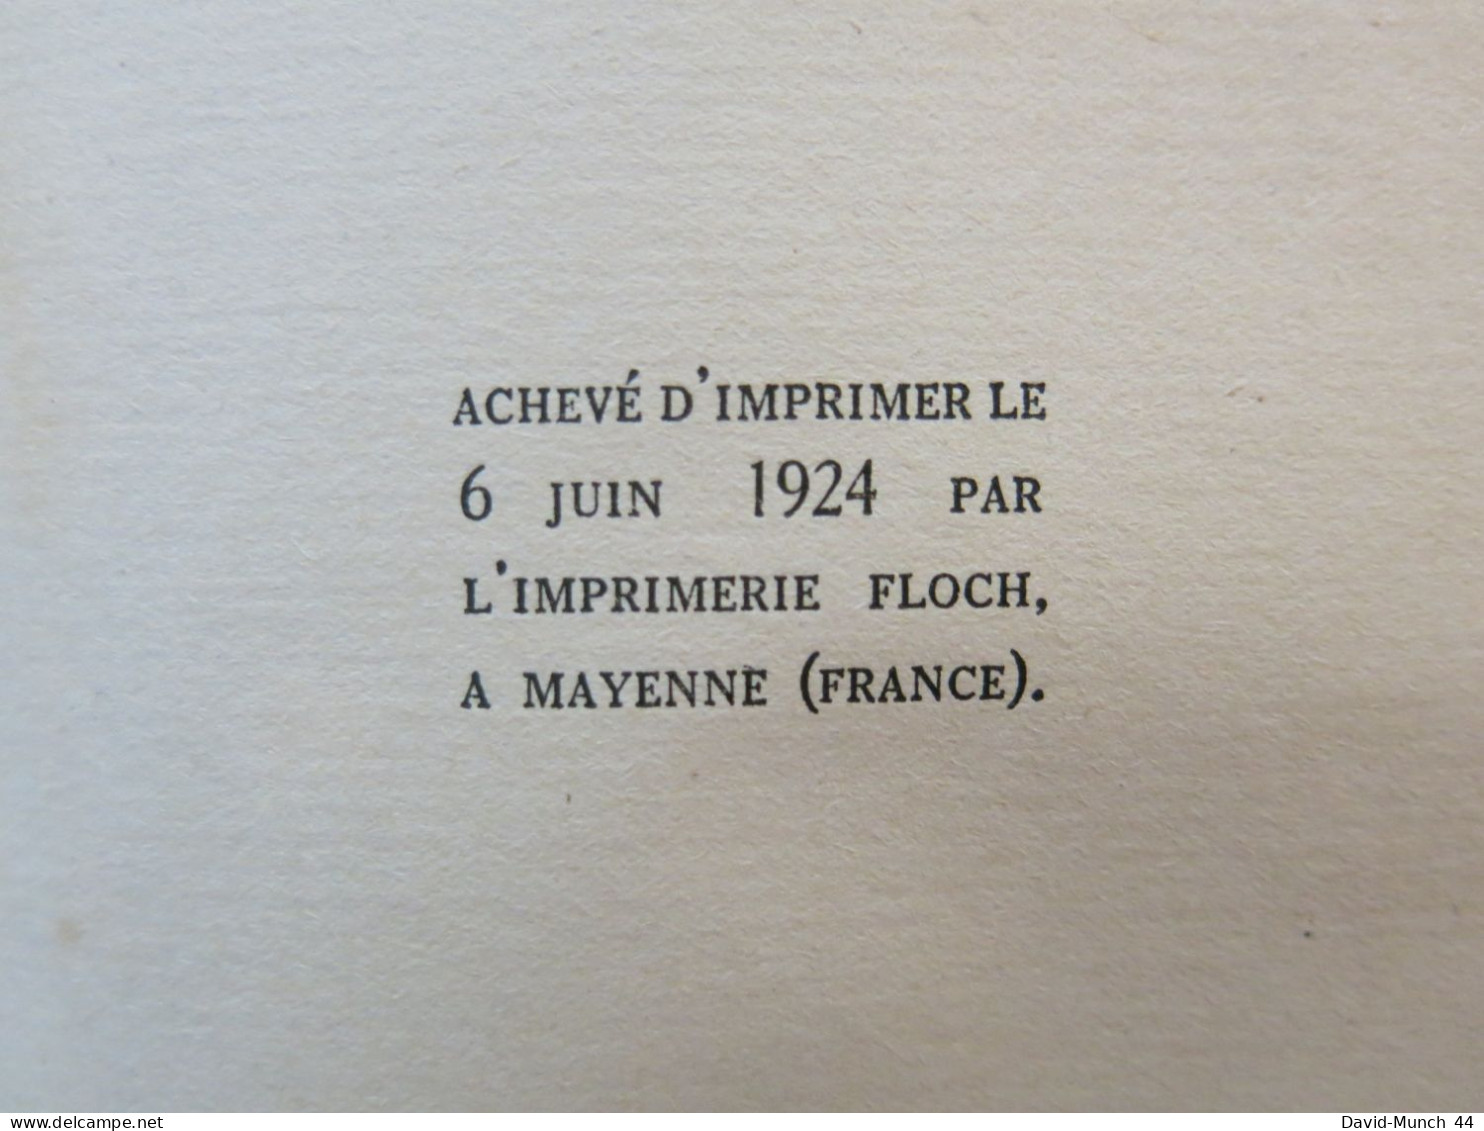 Le perroquet vert de La Princesse Bibesco. Librairie Grasset, "Les cahiers verts" n°40. 1924, exemplaire numéroté